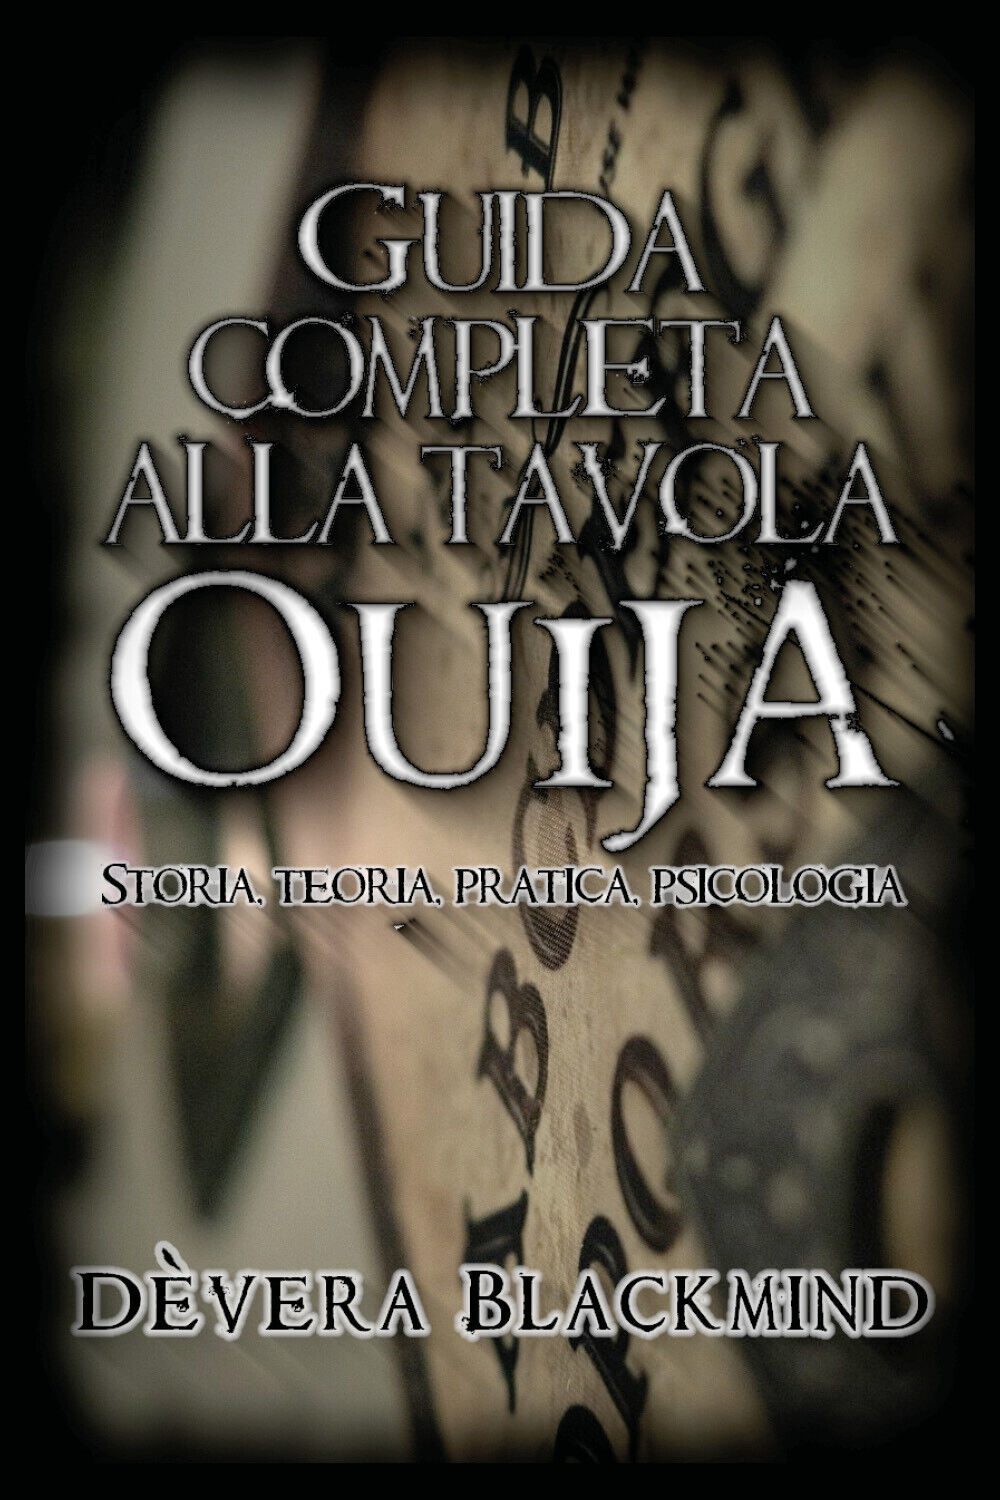 Guida completa alla Tavola Ouija. Storia, teoria, pratica psicologia di D?vera B